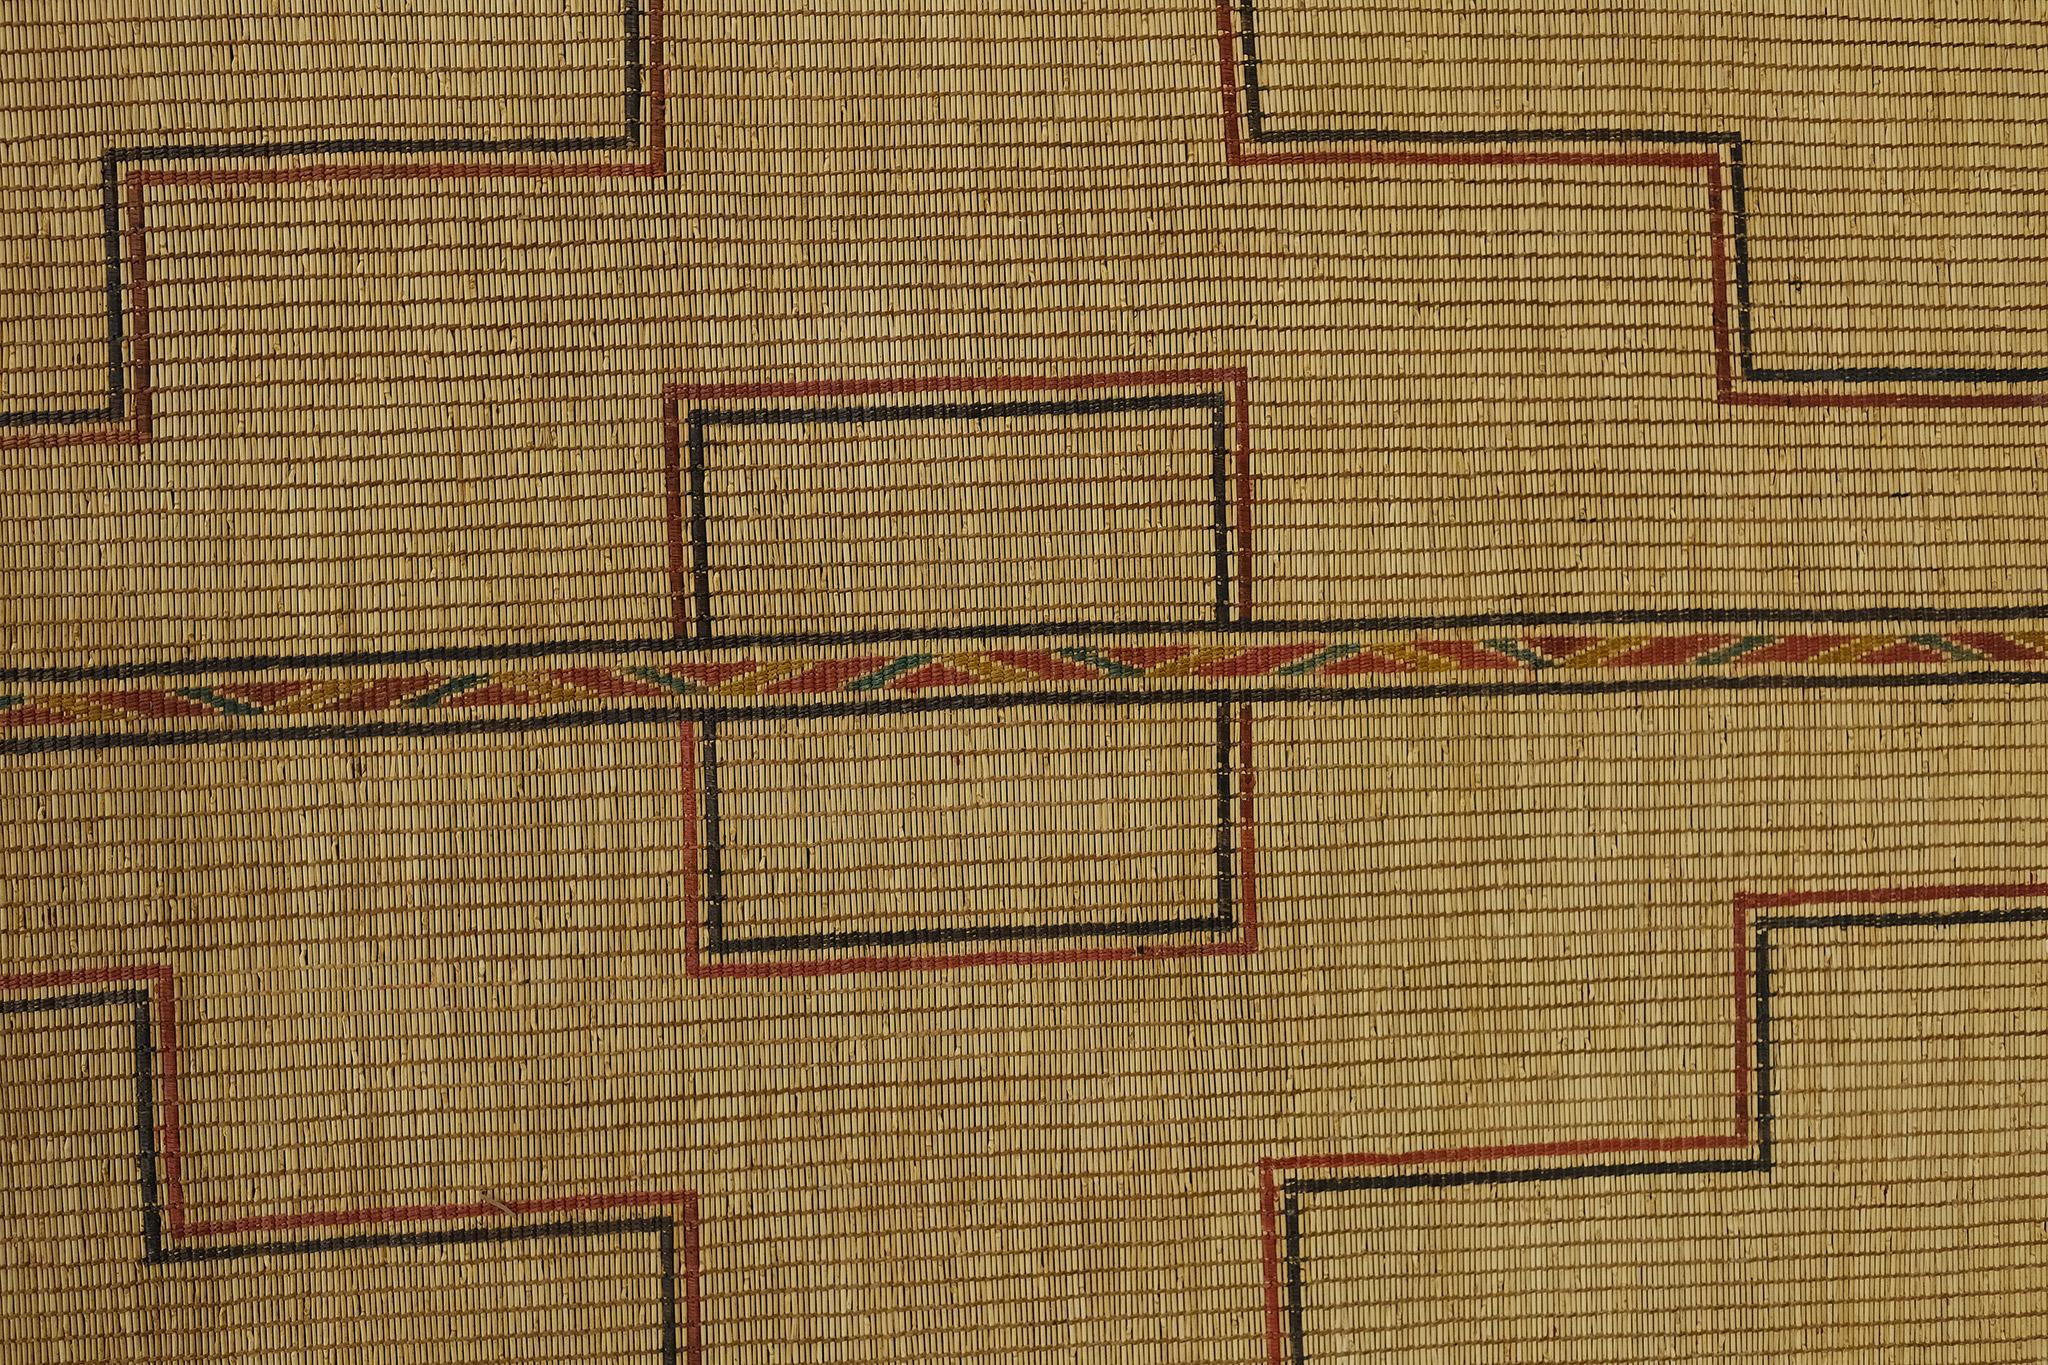 Dieser außergewöhnliche Teppich zeichnet sich durch verzierte Kreuzmotive aus, die auf dieser afrikanischen Vintage-Tuareg-Matte horizontal verlaufen. Die natürliche Farbgebung unterstreicht den rustikalen Charakter dieses Meisterwerks. Ein